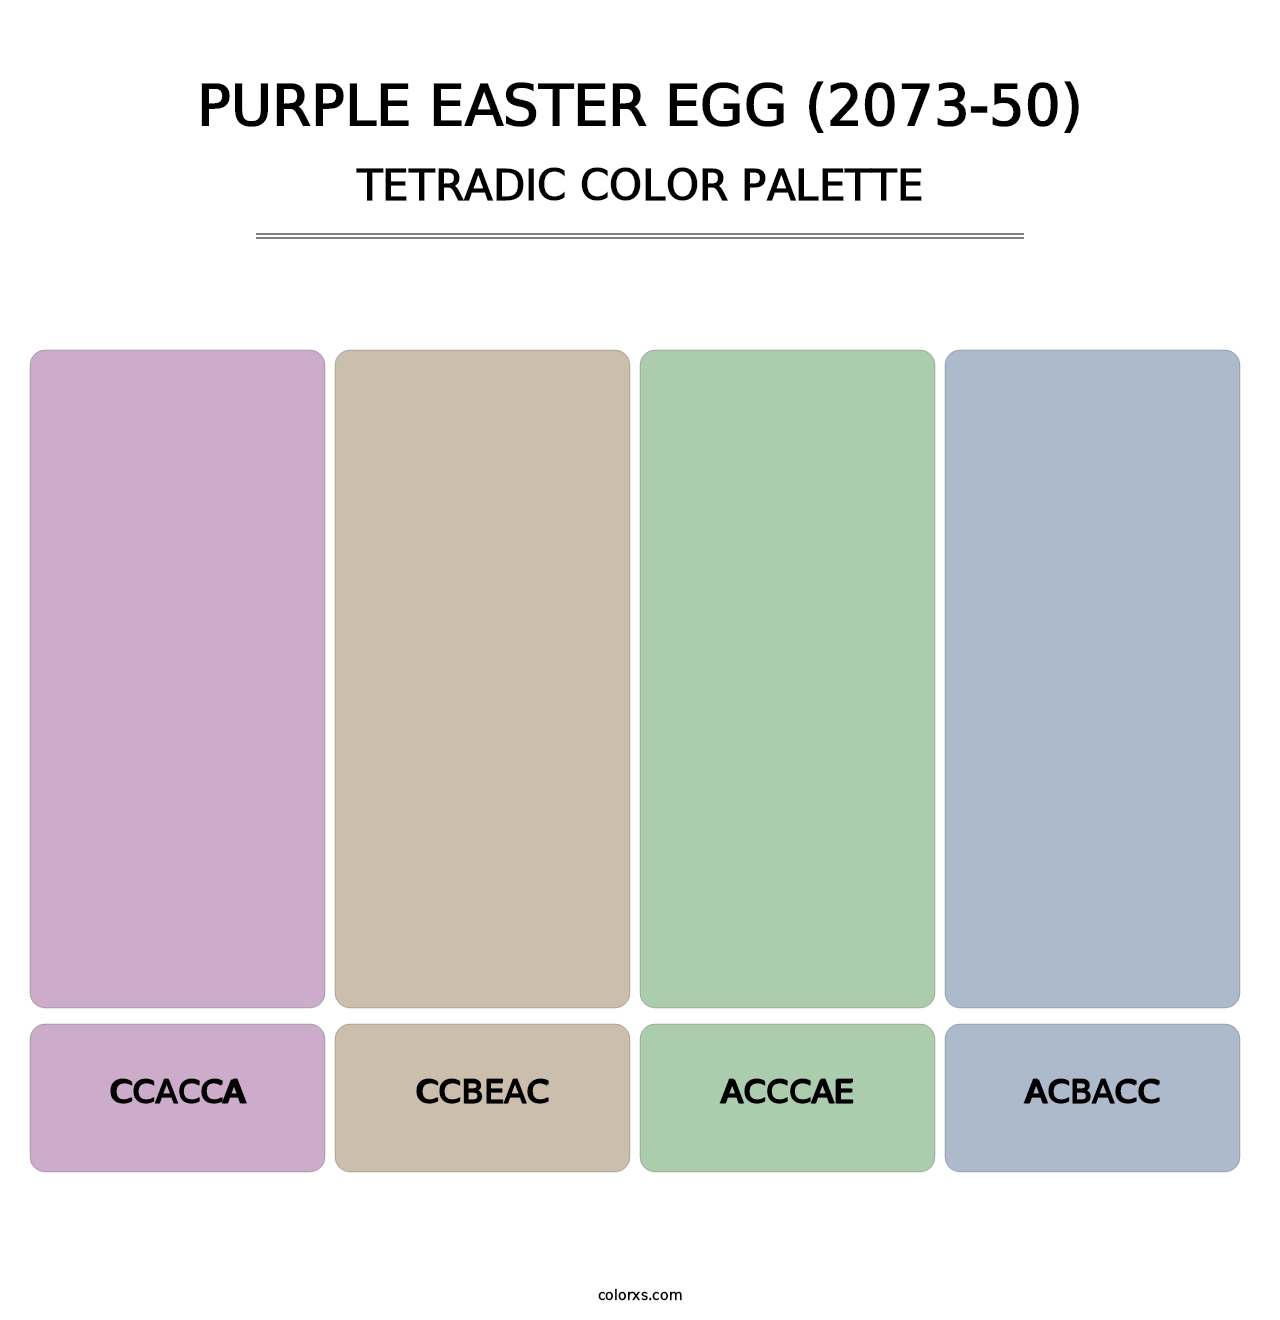 Purple Easter Egg (2073-50) - Tetradic Color Palette